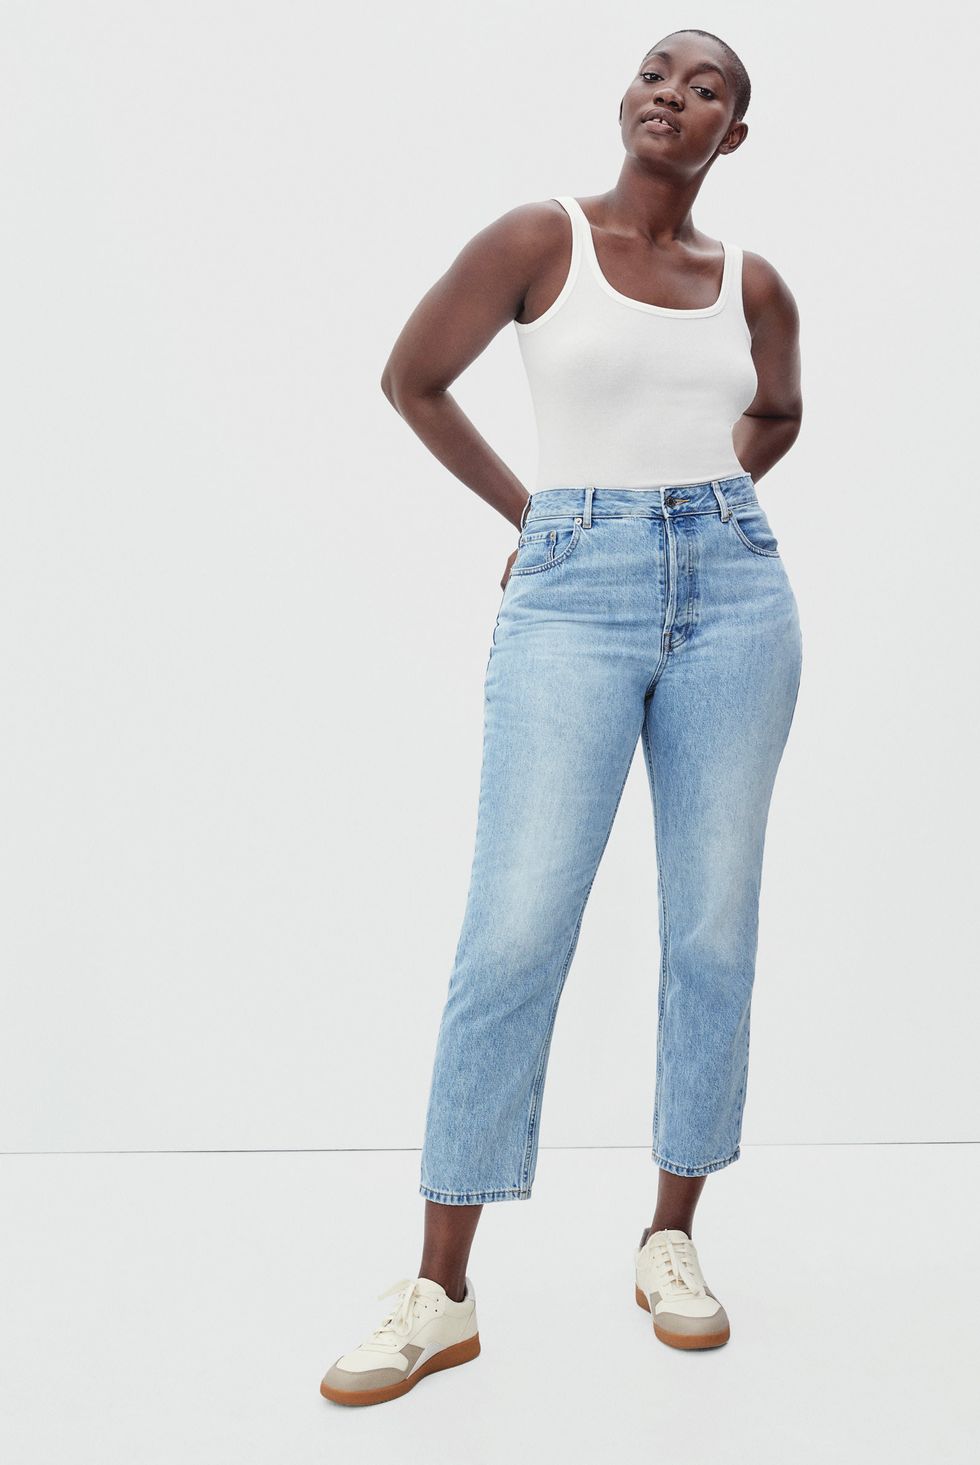 15 Best Jeans for Curvy Women in 2023 - Curvy